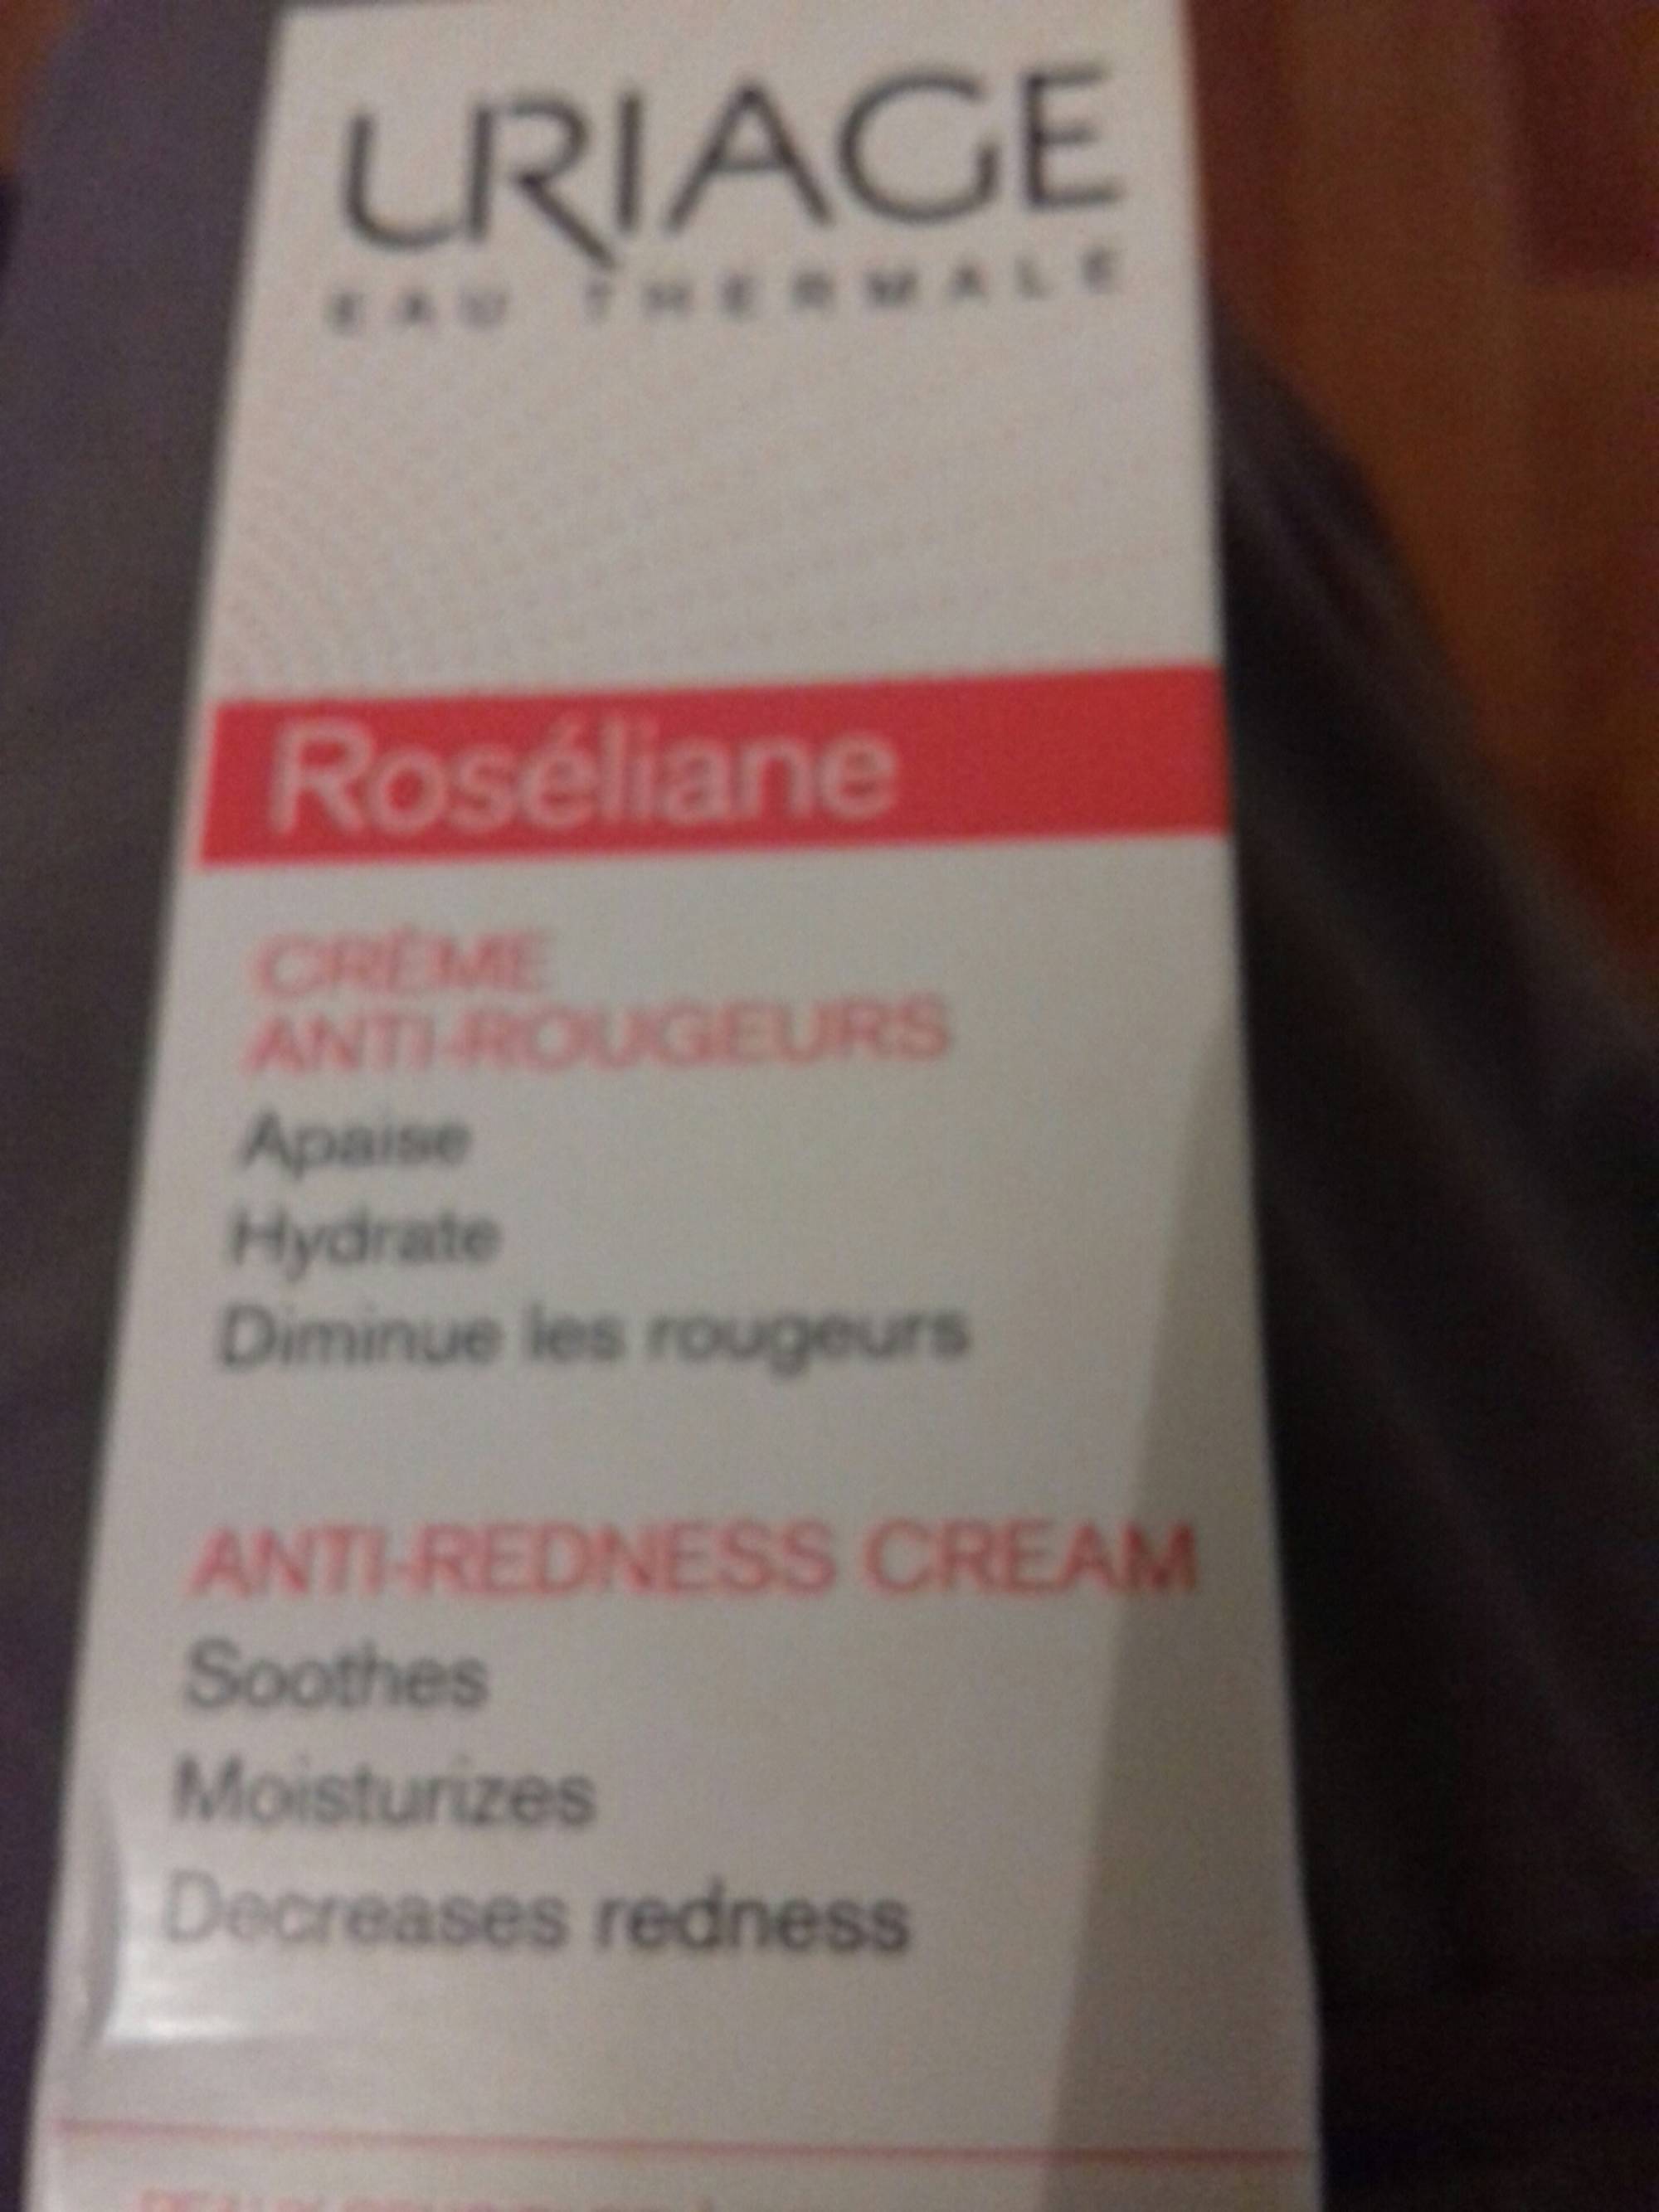 URIAGE - Roséliane - Crème anti-rougeurs